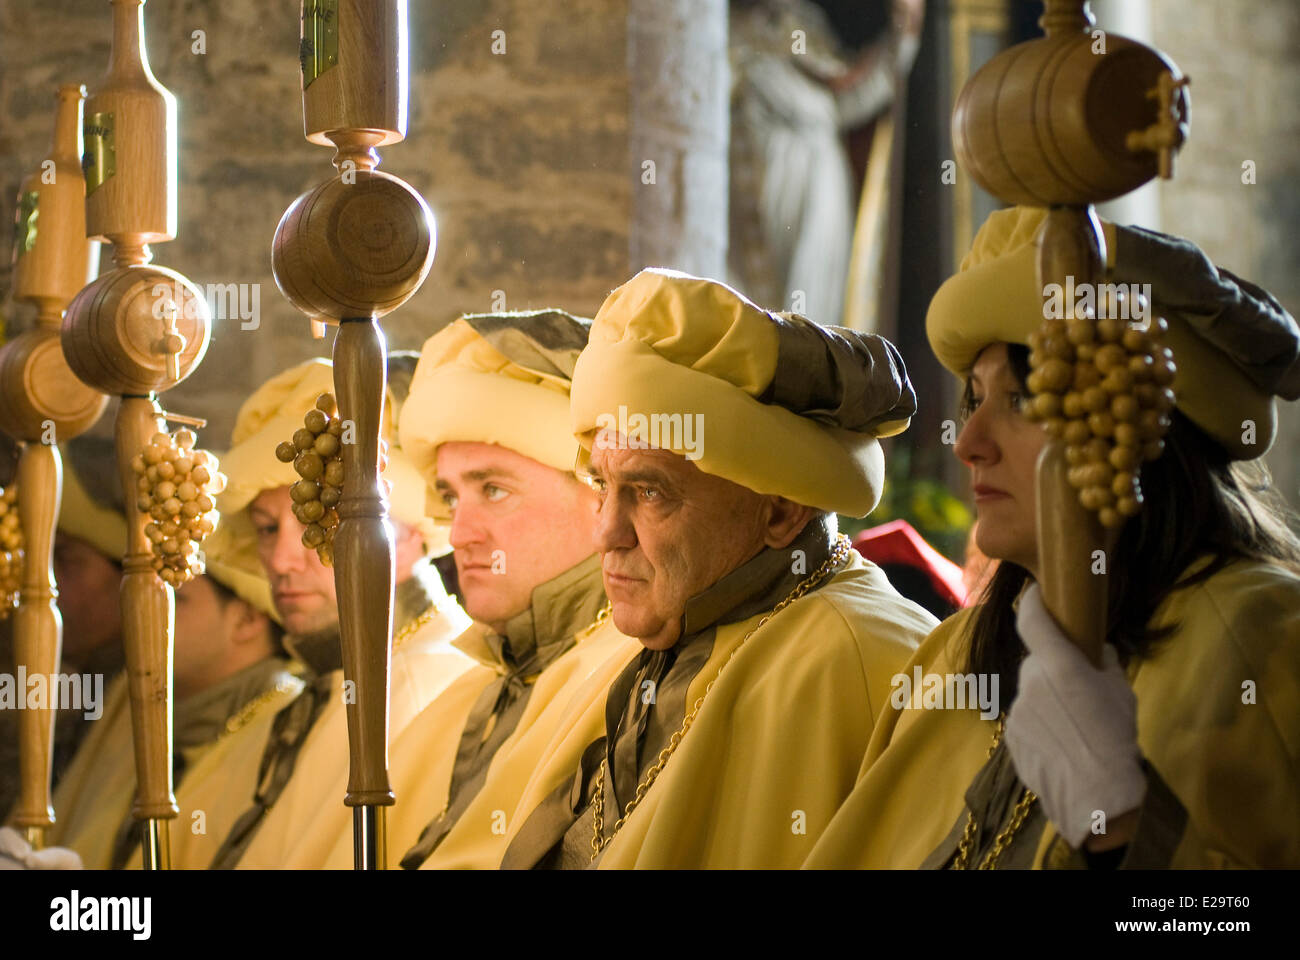 Francia, Jura Arbois, descubrimiento del vino amarillo, misa en la iglesia de San Justo, embajadores del vino amarillo Foto de stock